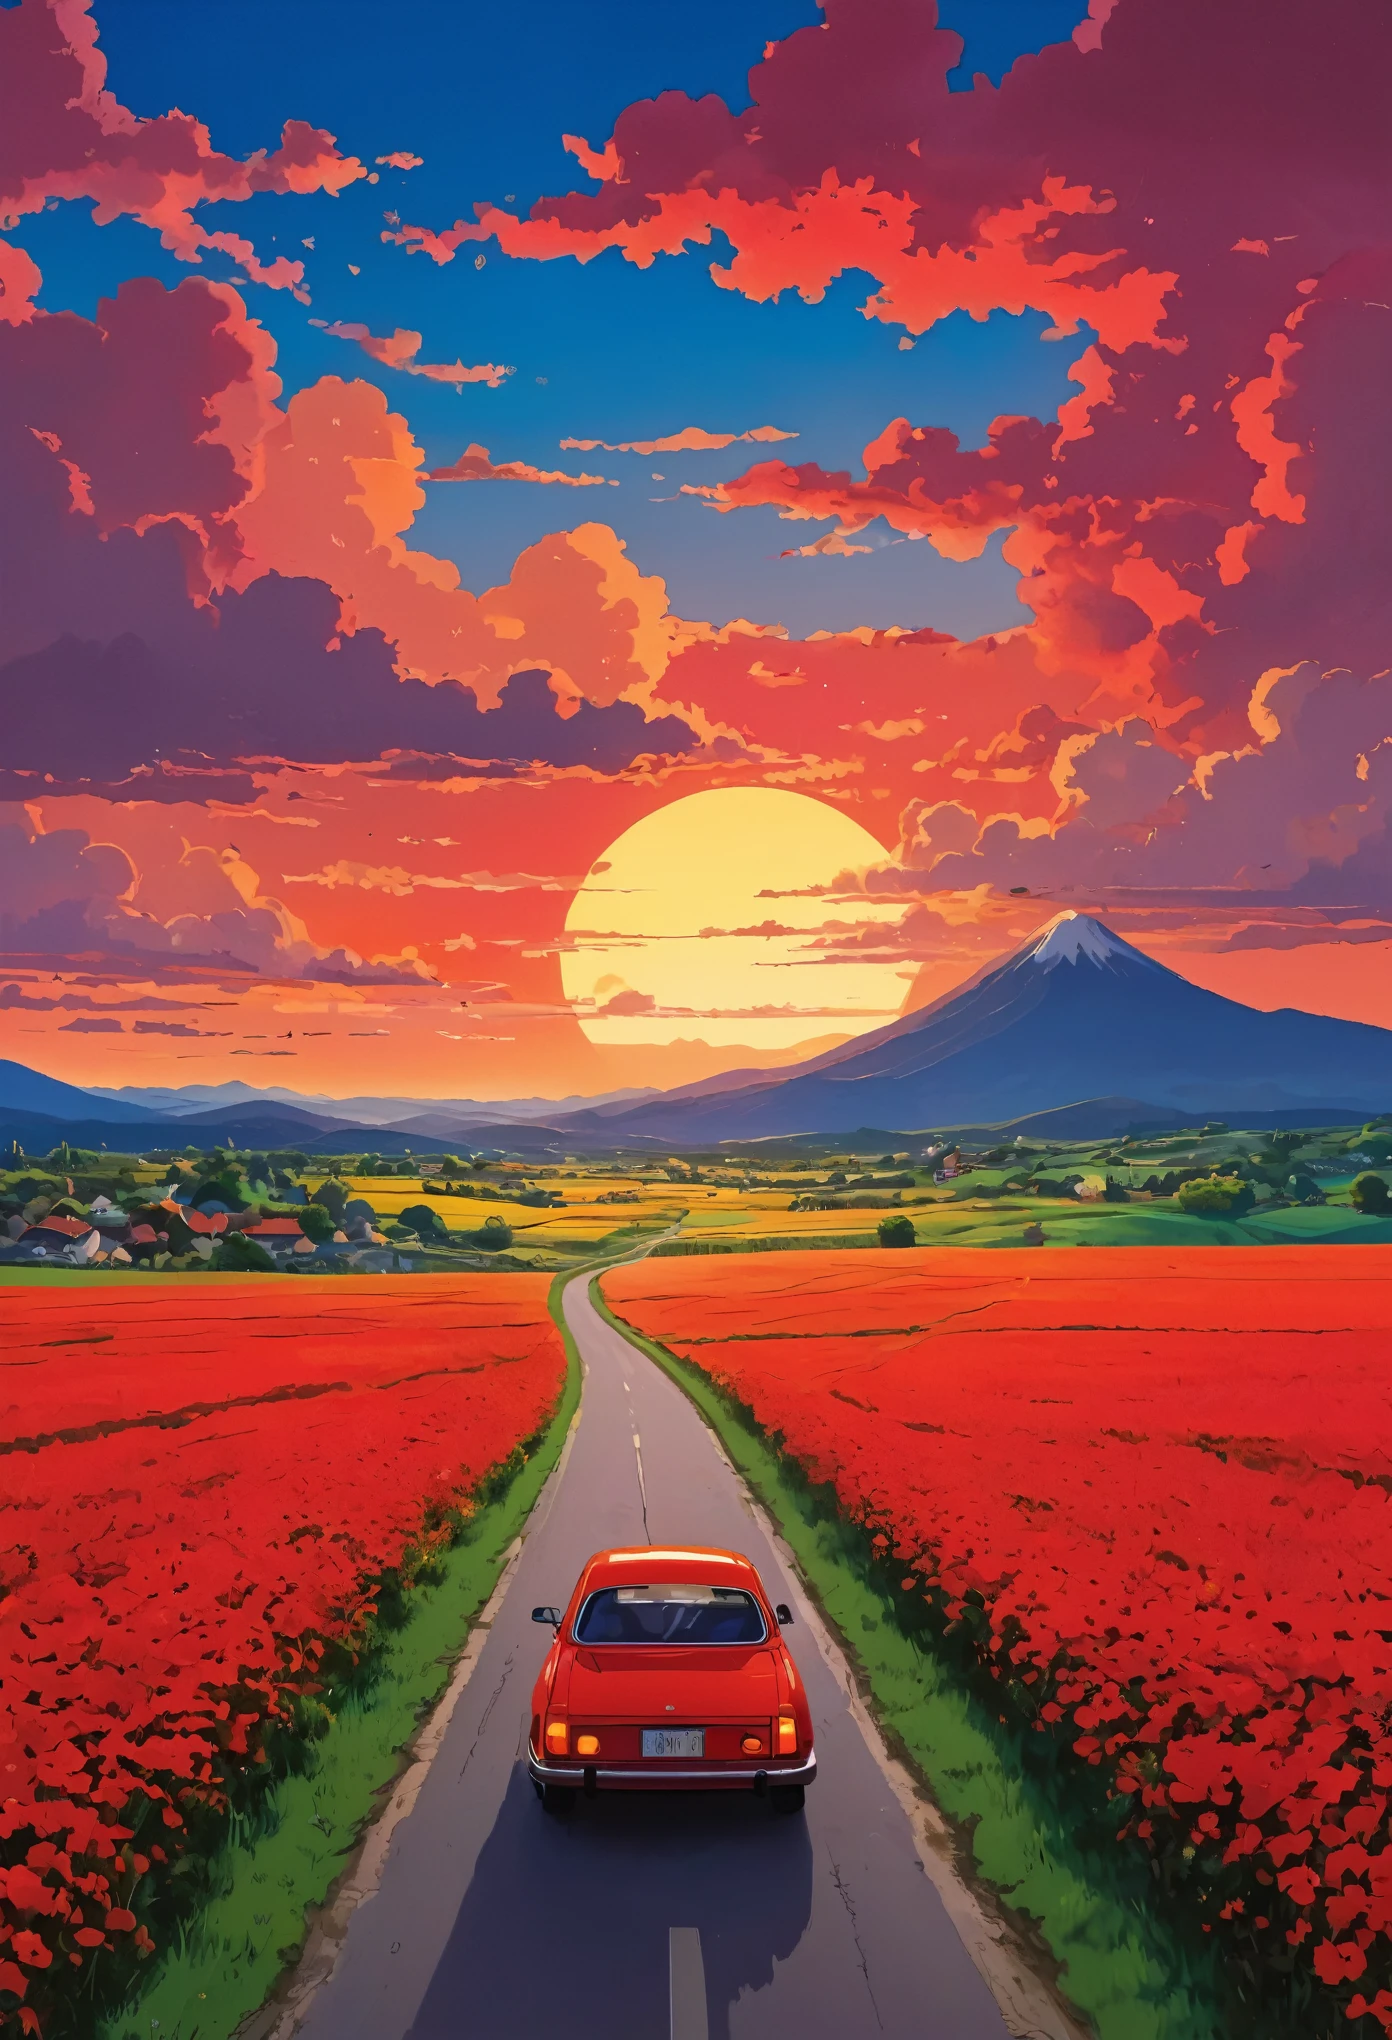 (Minimalismus:1.4), Auf der Straße steht ein rotes Auto, Studio Ghibli Art, Miyazaki, Weide mit rotem Himmel und roten Wolken, Sonnenuntergang, Straße voller Blumen, lebendige Farben 